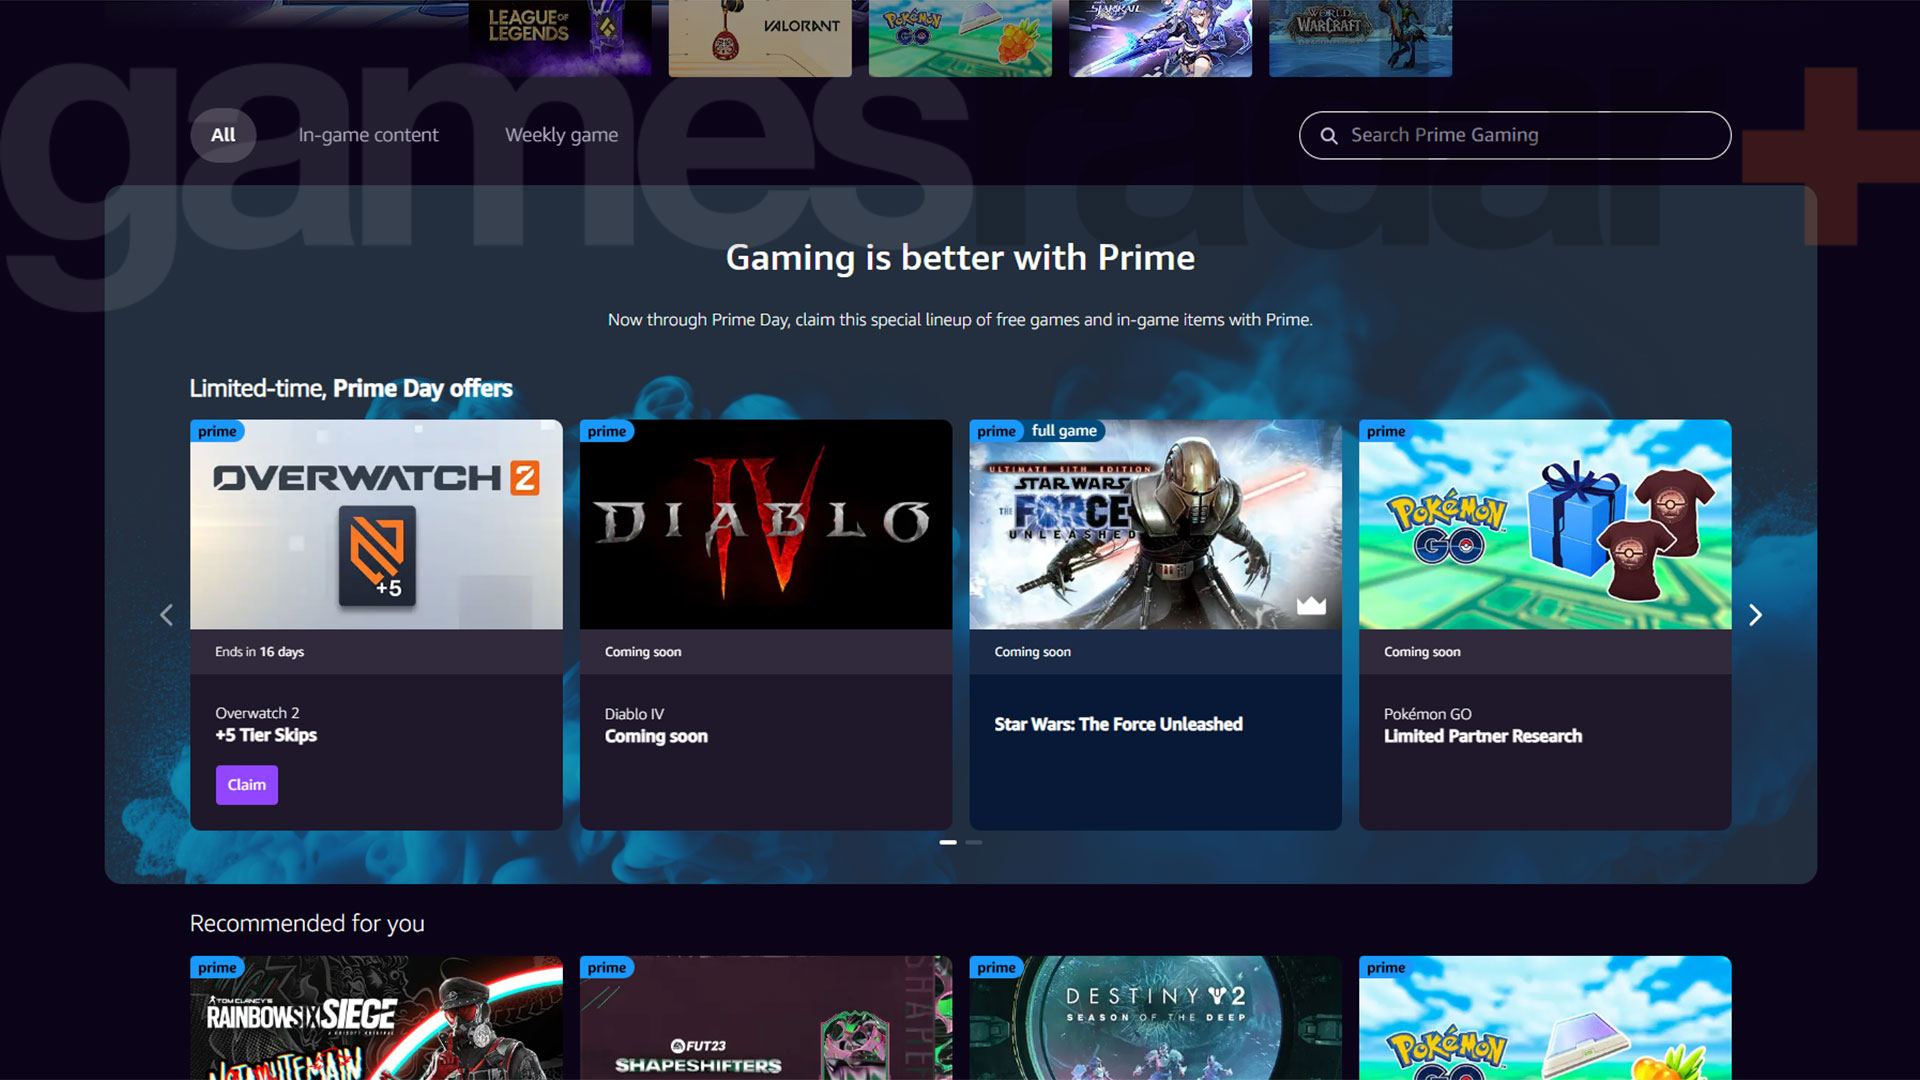 De startpagina van Prime Gaming, met Diablo 4 beloningen als Binnenkort beschikbaar